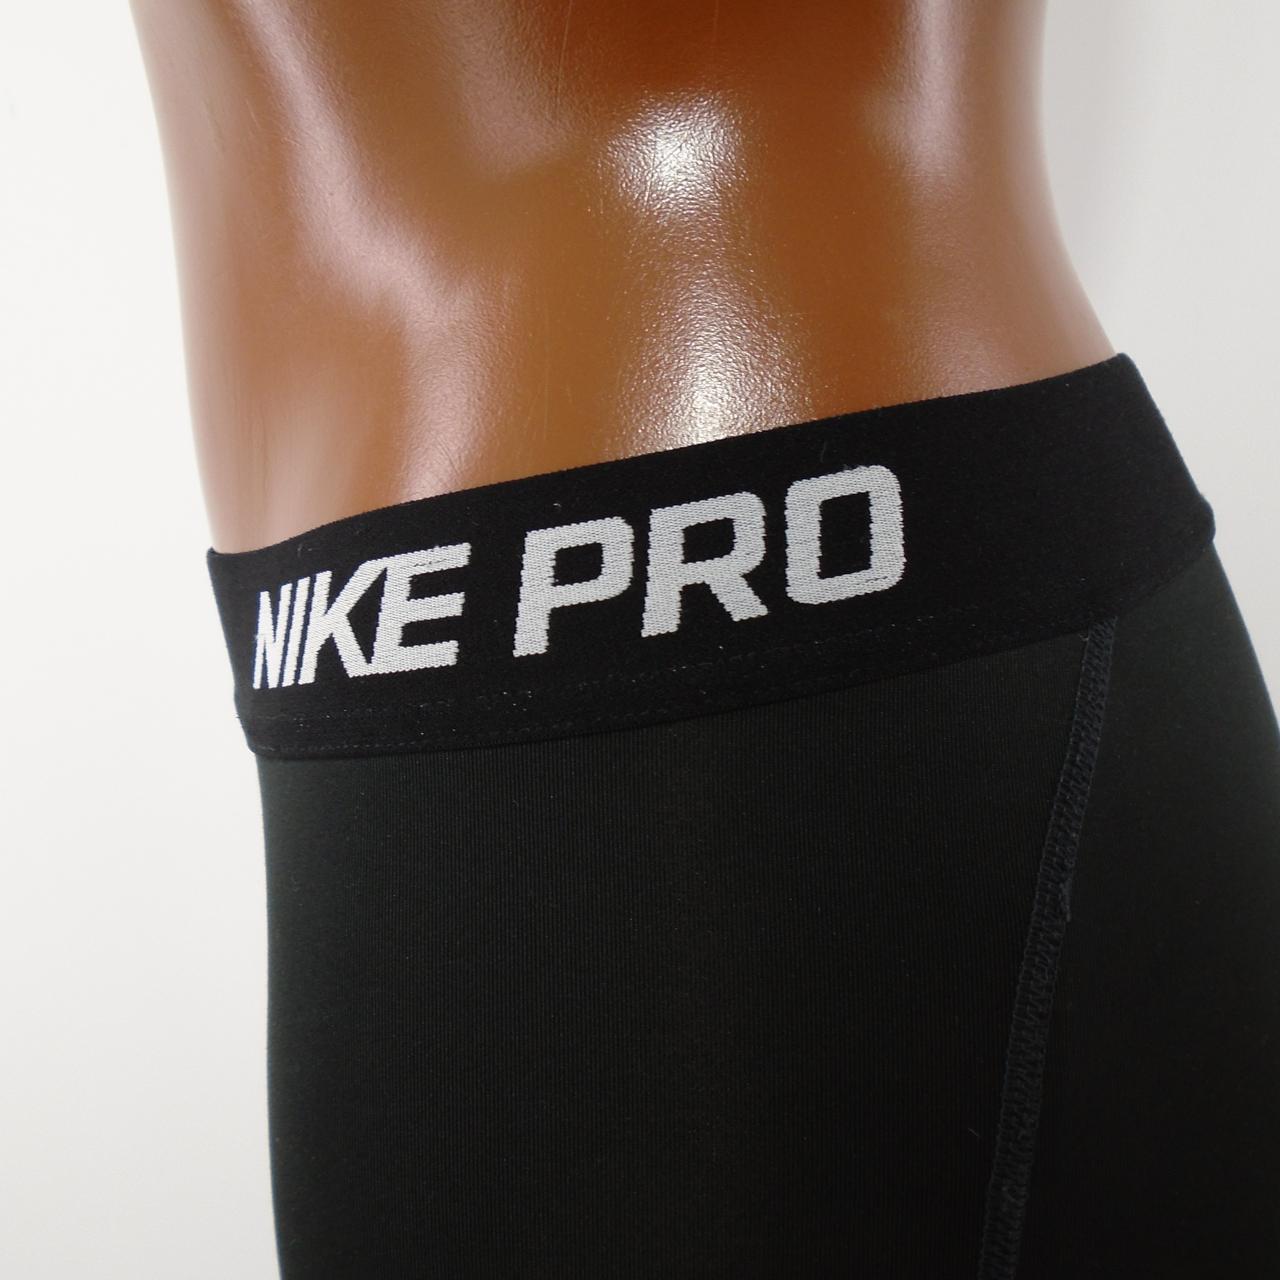 Pantalones de mujer Nike. Negro. S. Usado. Bien